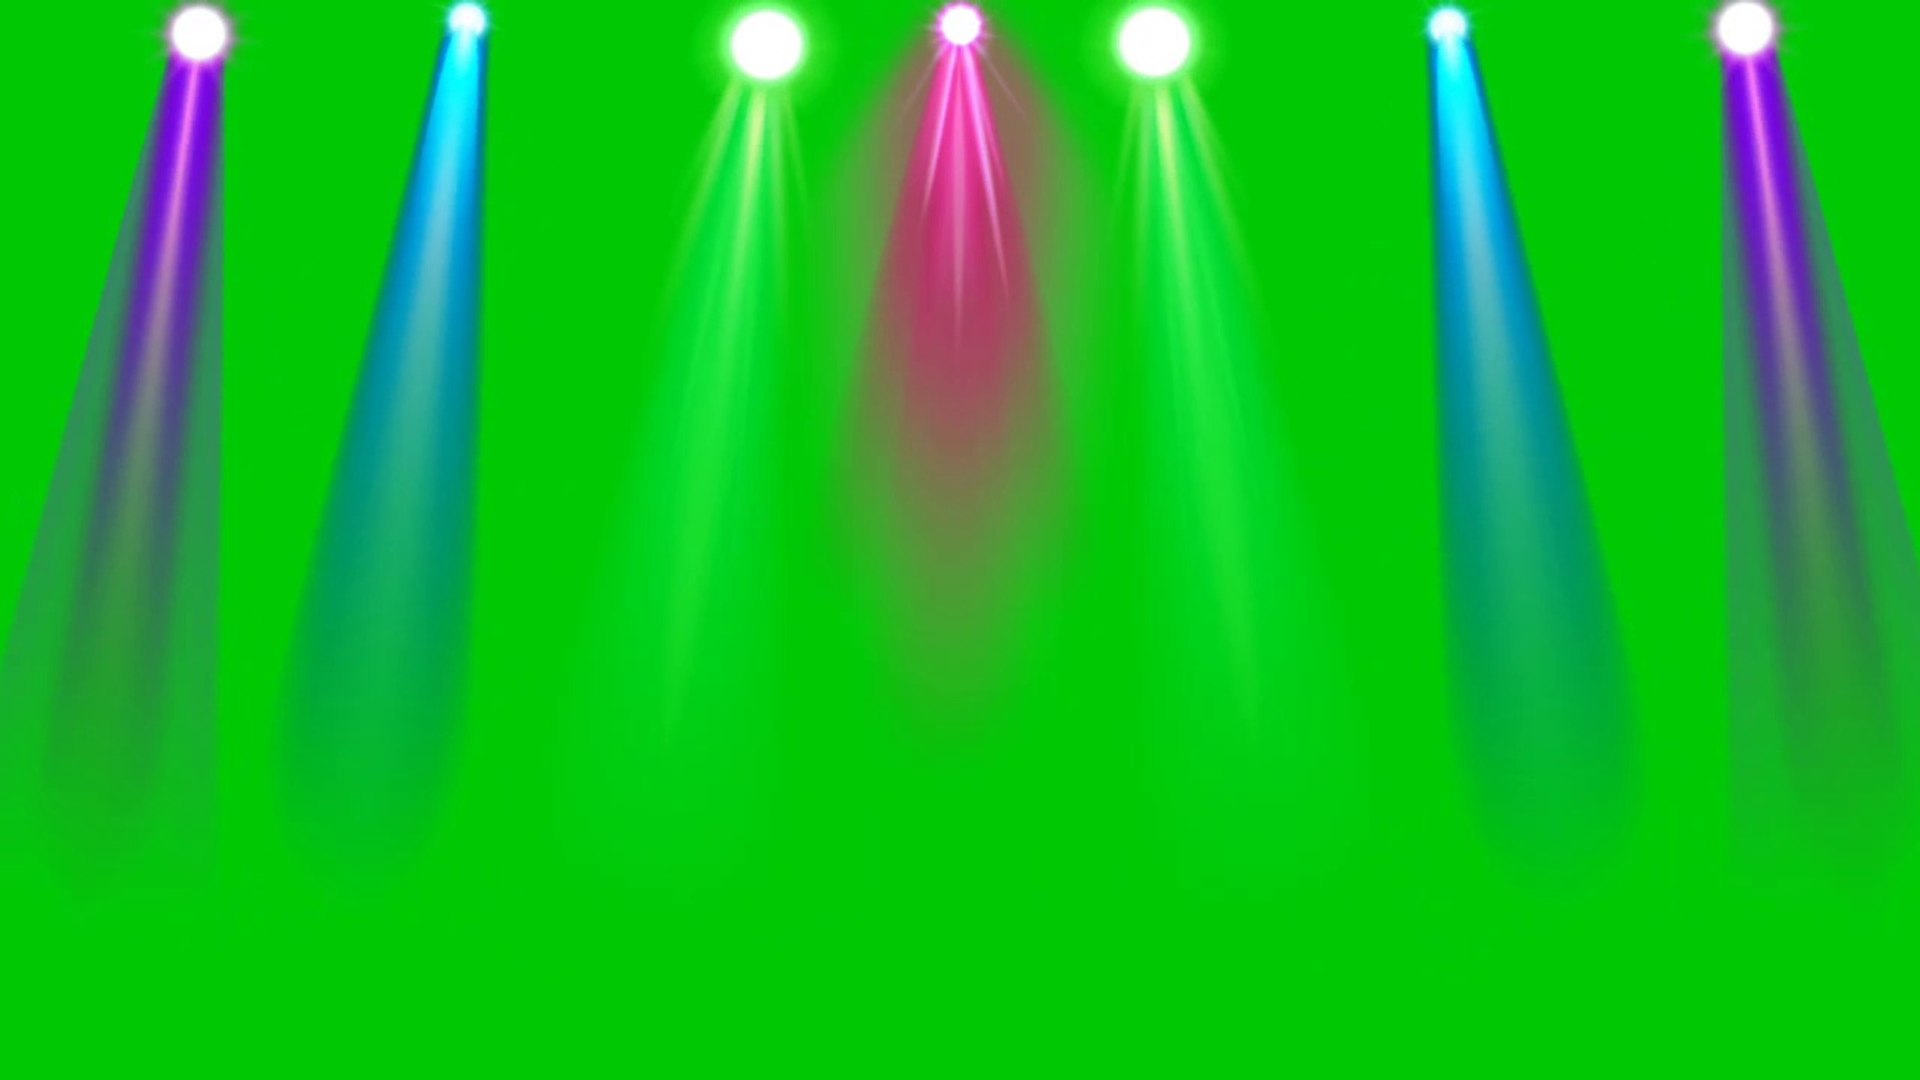 Không gian party với đèn màu Disco sáng chói sẽ khiến bạn cảm thấy thích thú và cuốn hút. Bạn sẽ được trải nghiệm cảm giác như mình đang ở một đêm club sôi động với hầu hết các chi tiết cực kỳ chân thật. Cùng đến và tận hưởng sự đam mê bùng nổ của vuốt tay khi tiếng nhạc đánh nhịp.